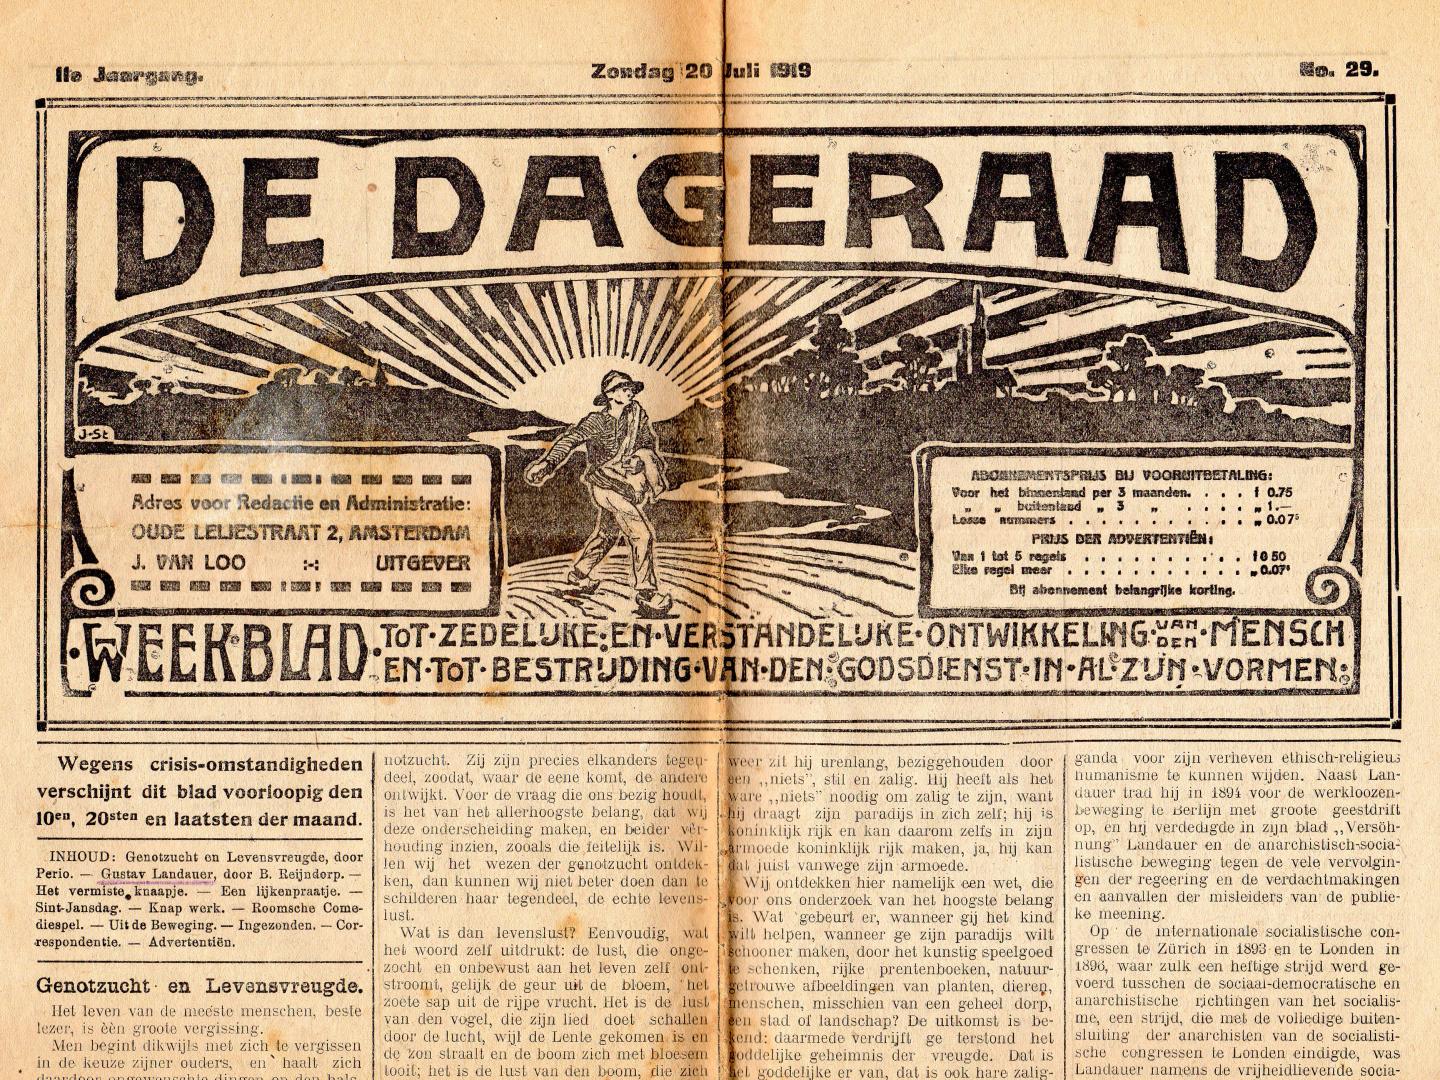 Dageraad, Redactie de - De Dageraad - drie edities: nr. 27, 28 en 29 (juni/juli 1919). Antiquarisch. Beschrijving: